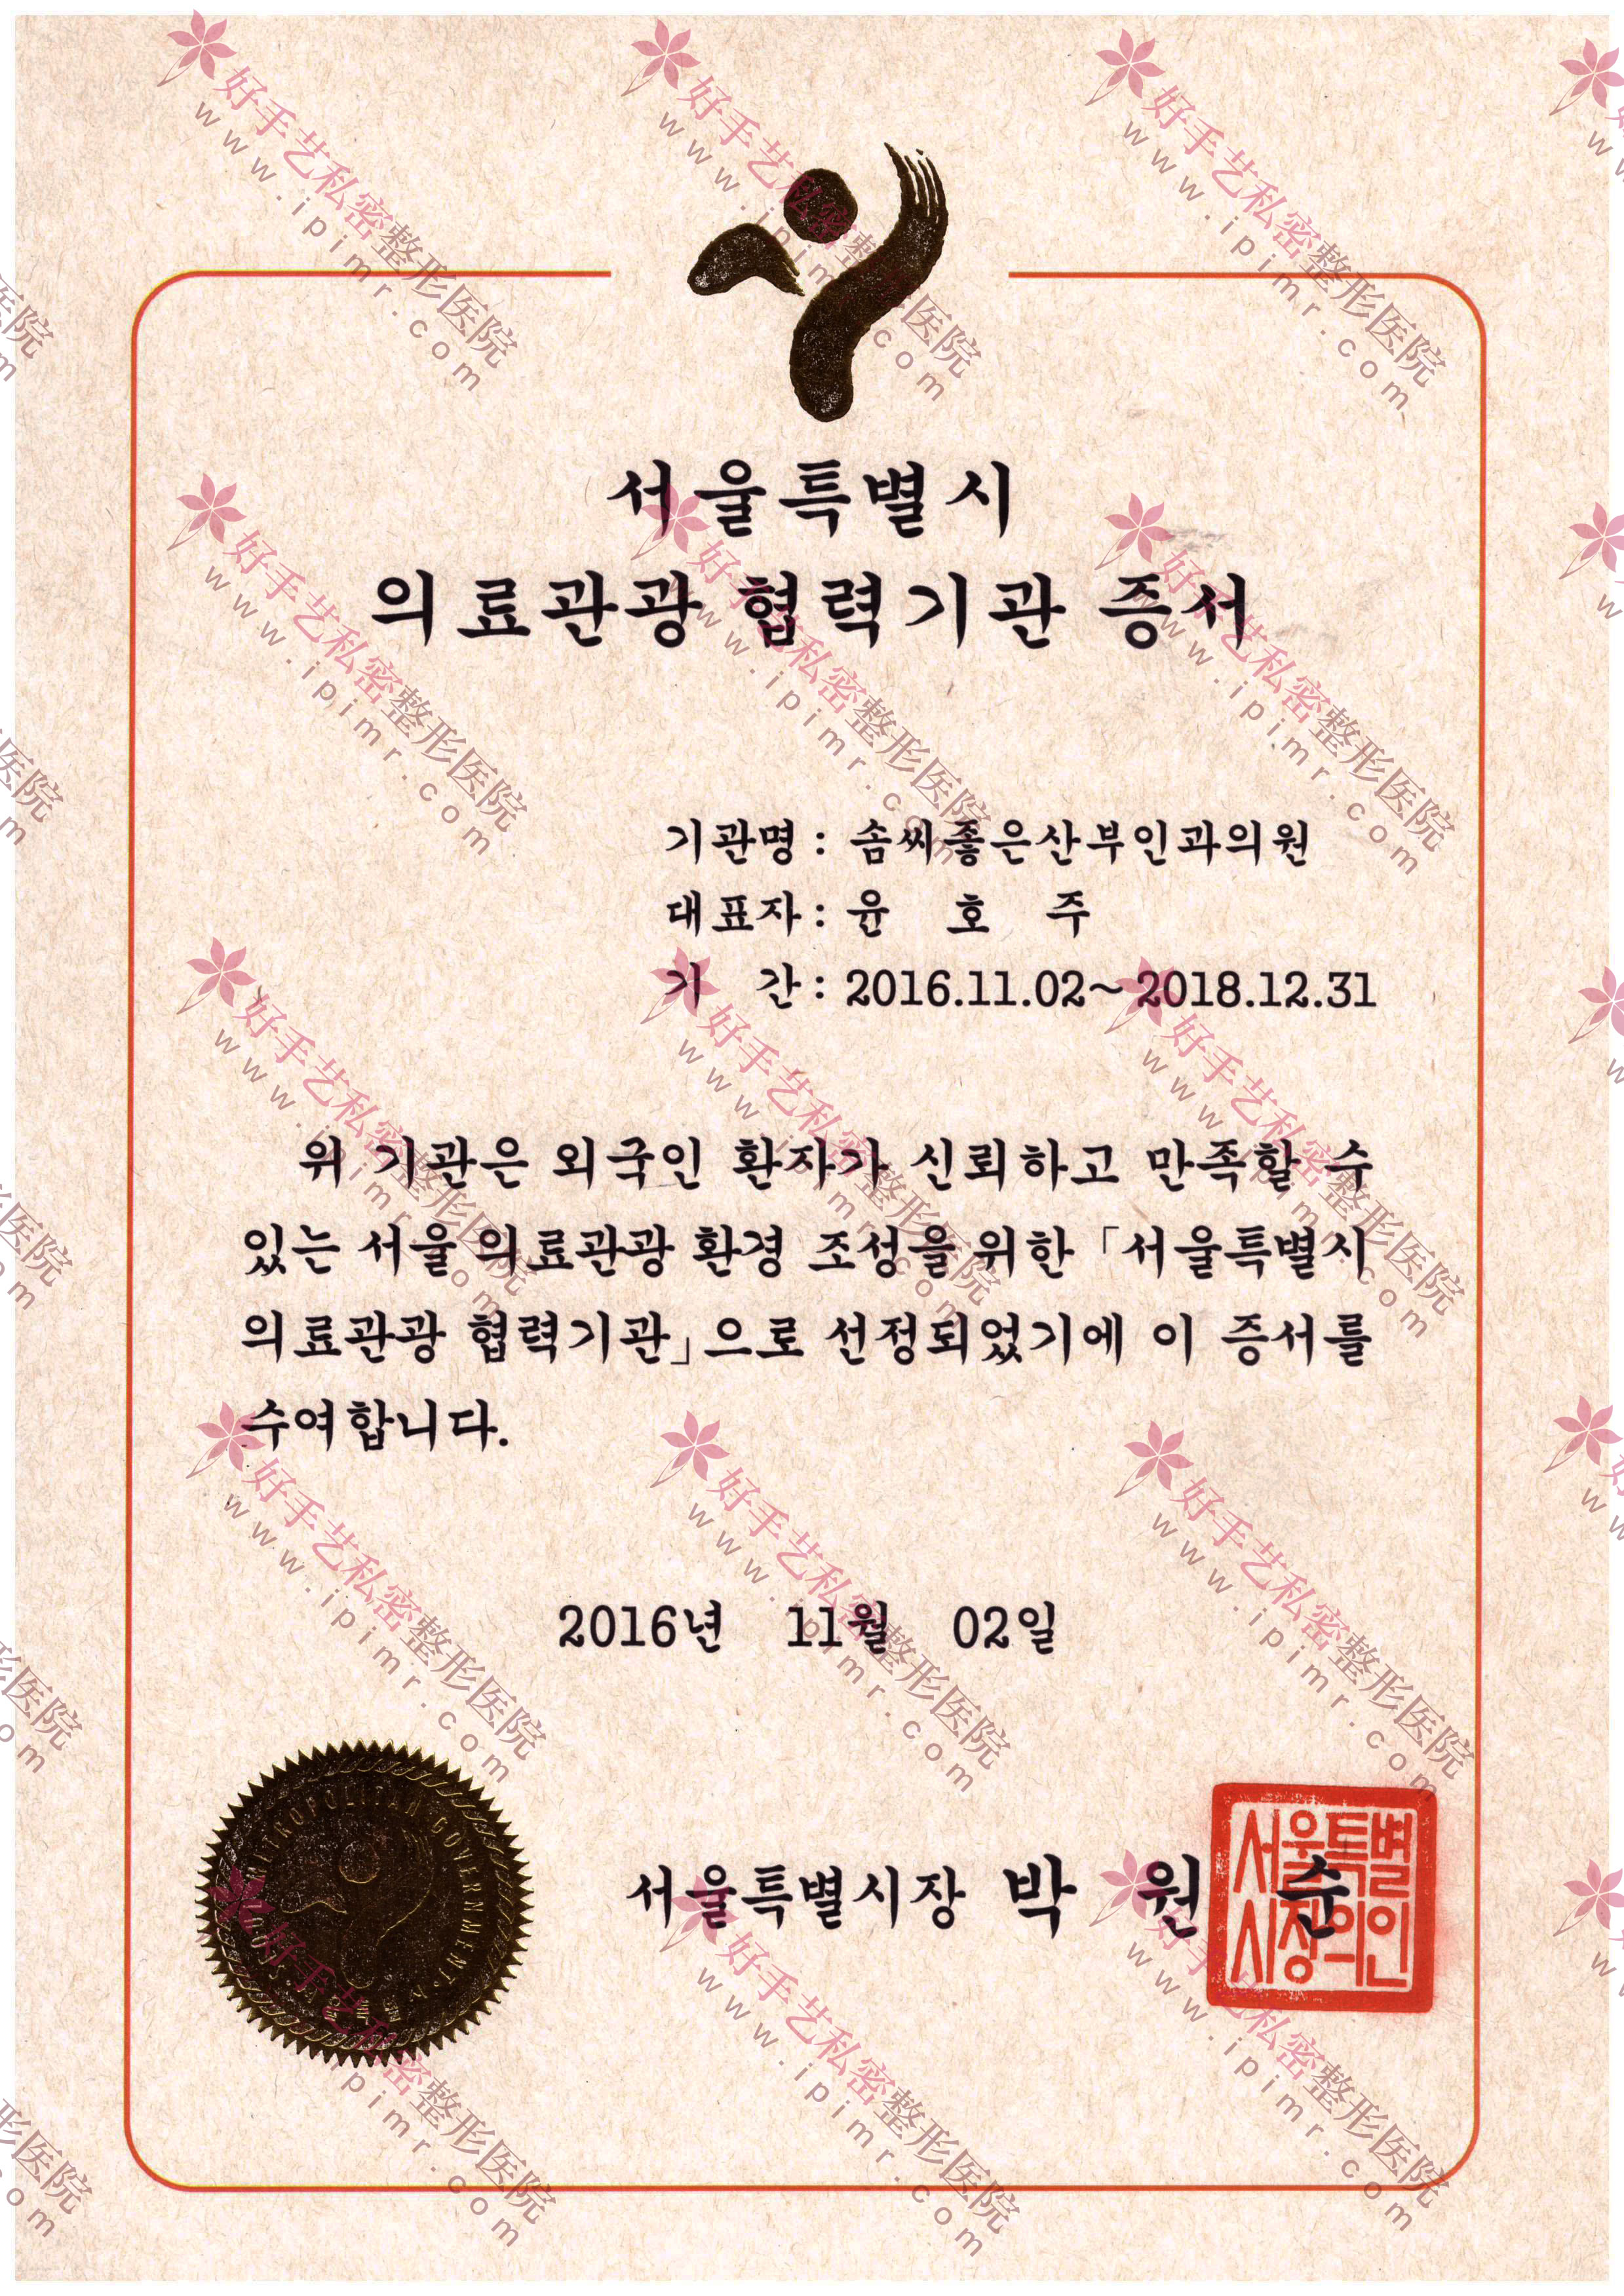 首尔医疗观光合作机构证书